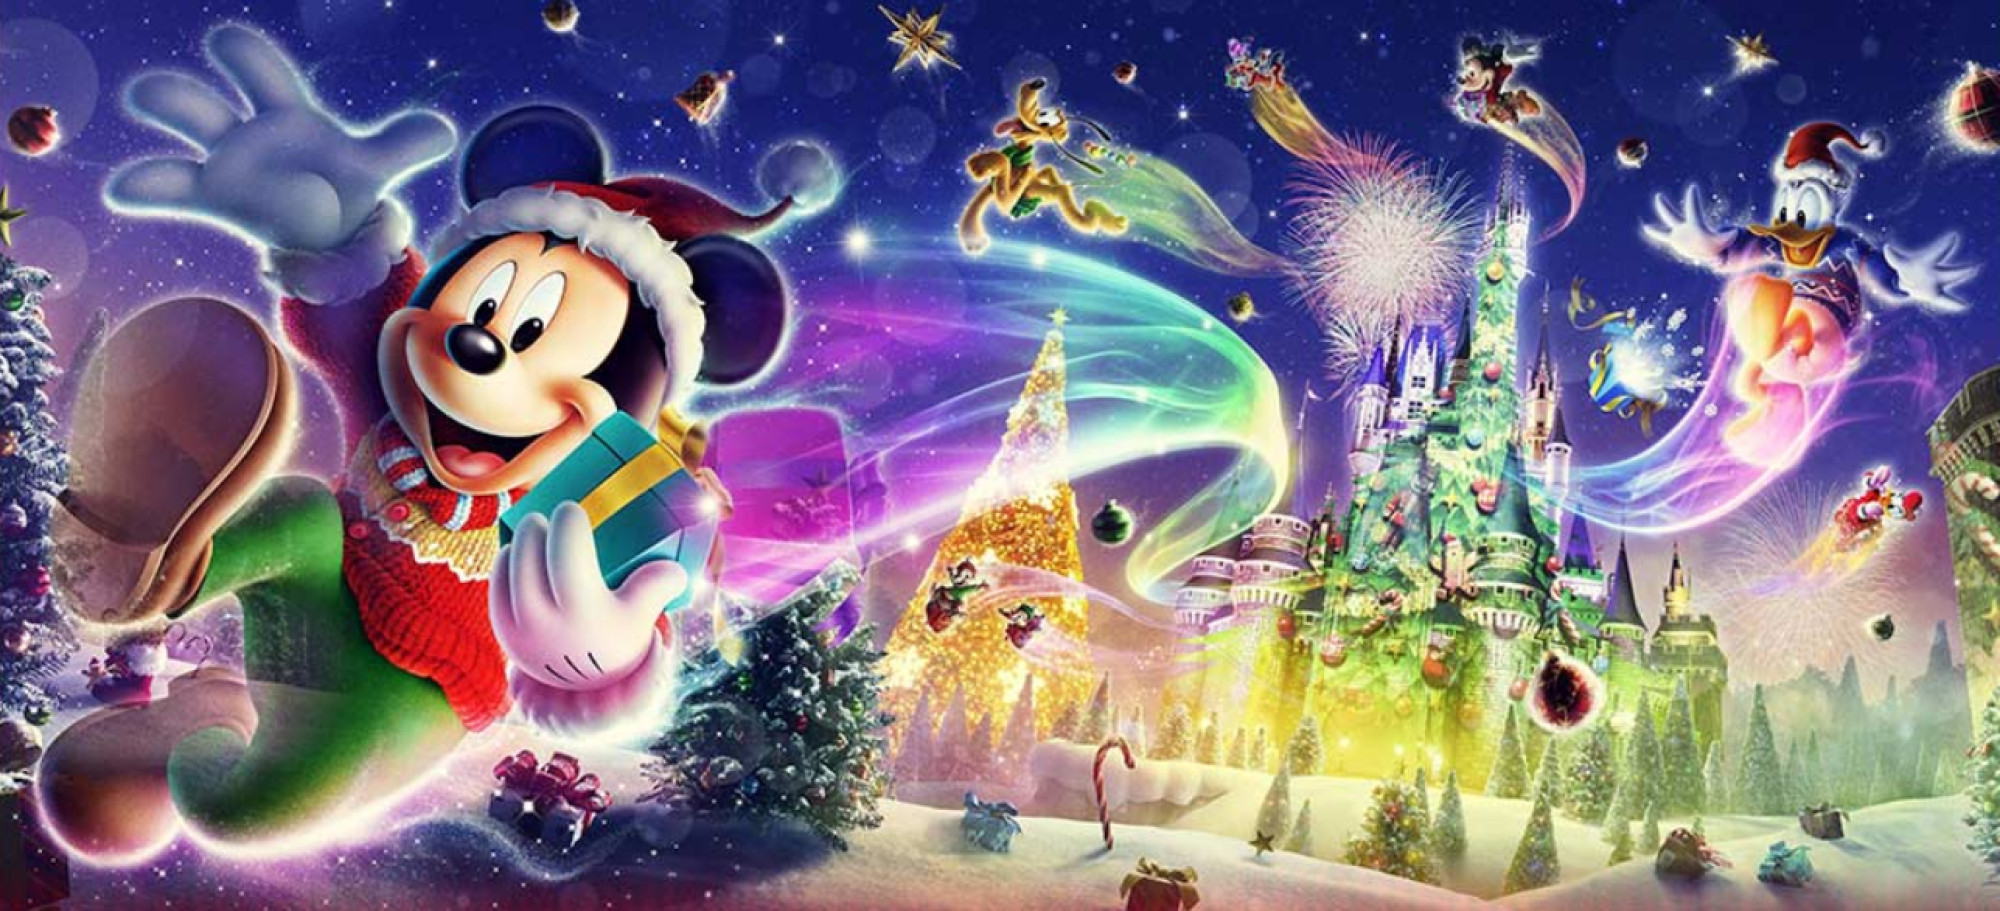 ディズニー ギフト オブ クリスマス イメージ キャステル Castel ディズニー情報